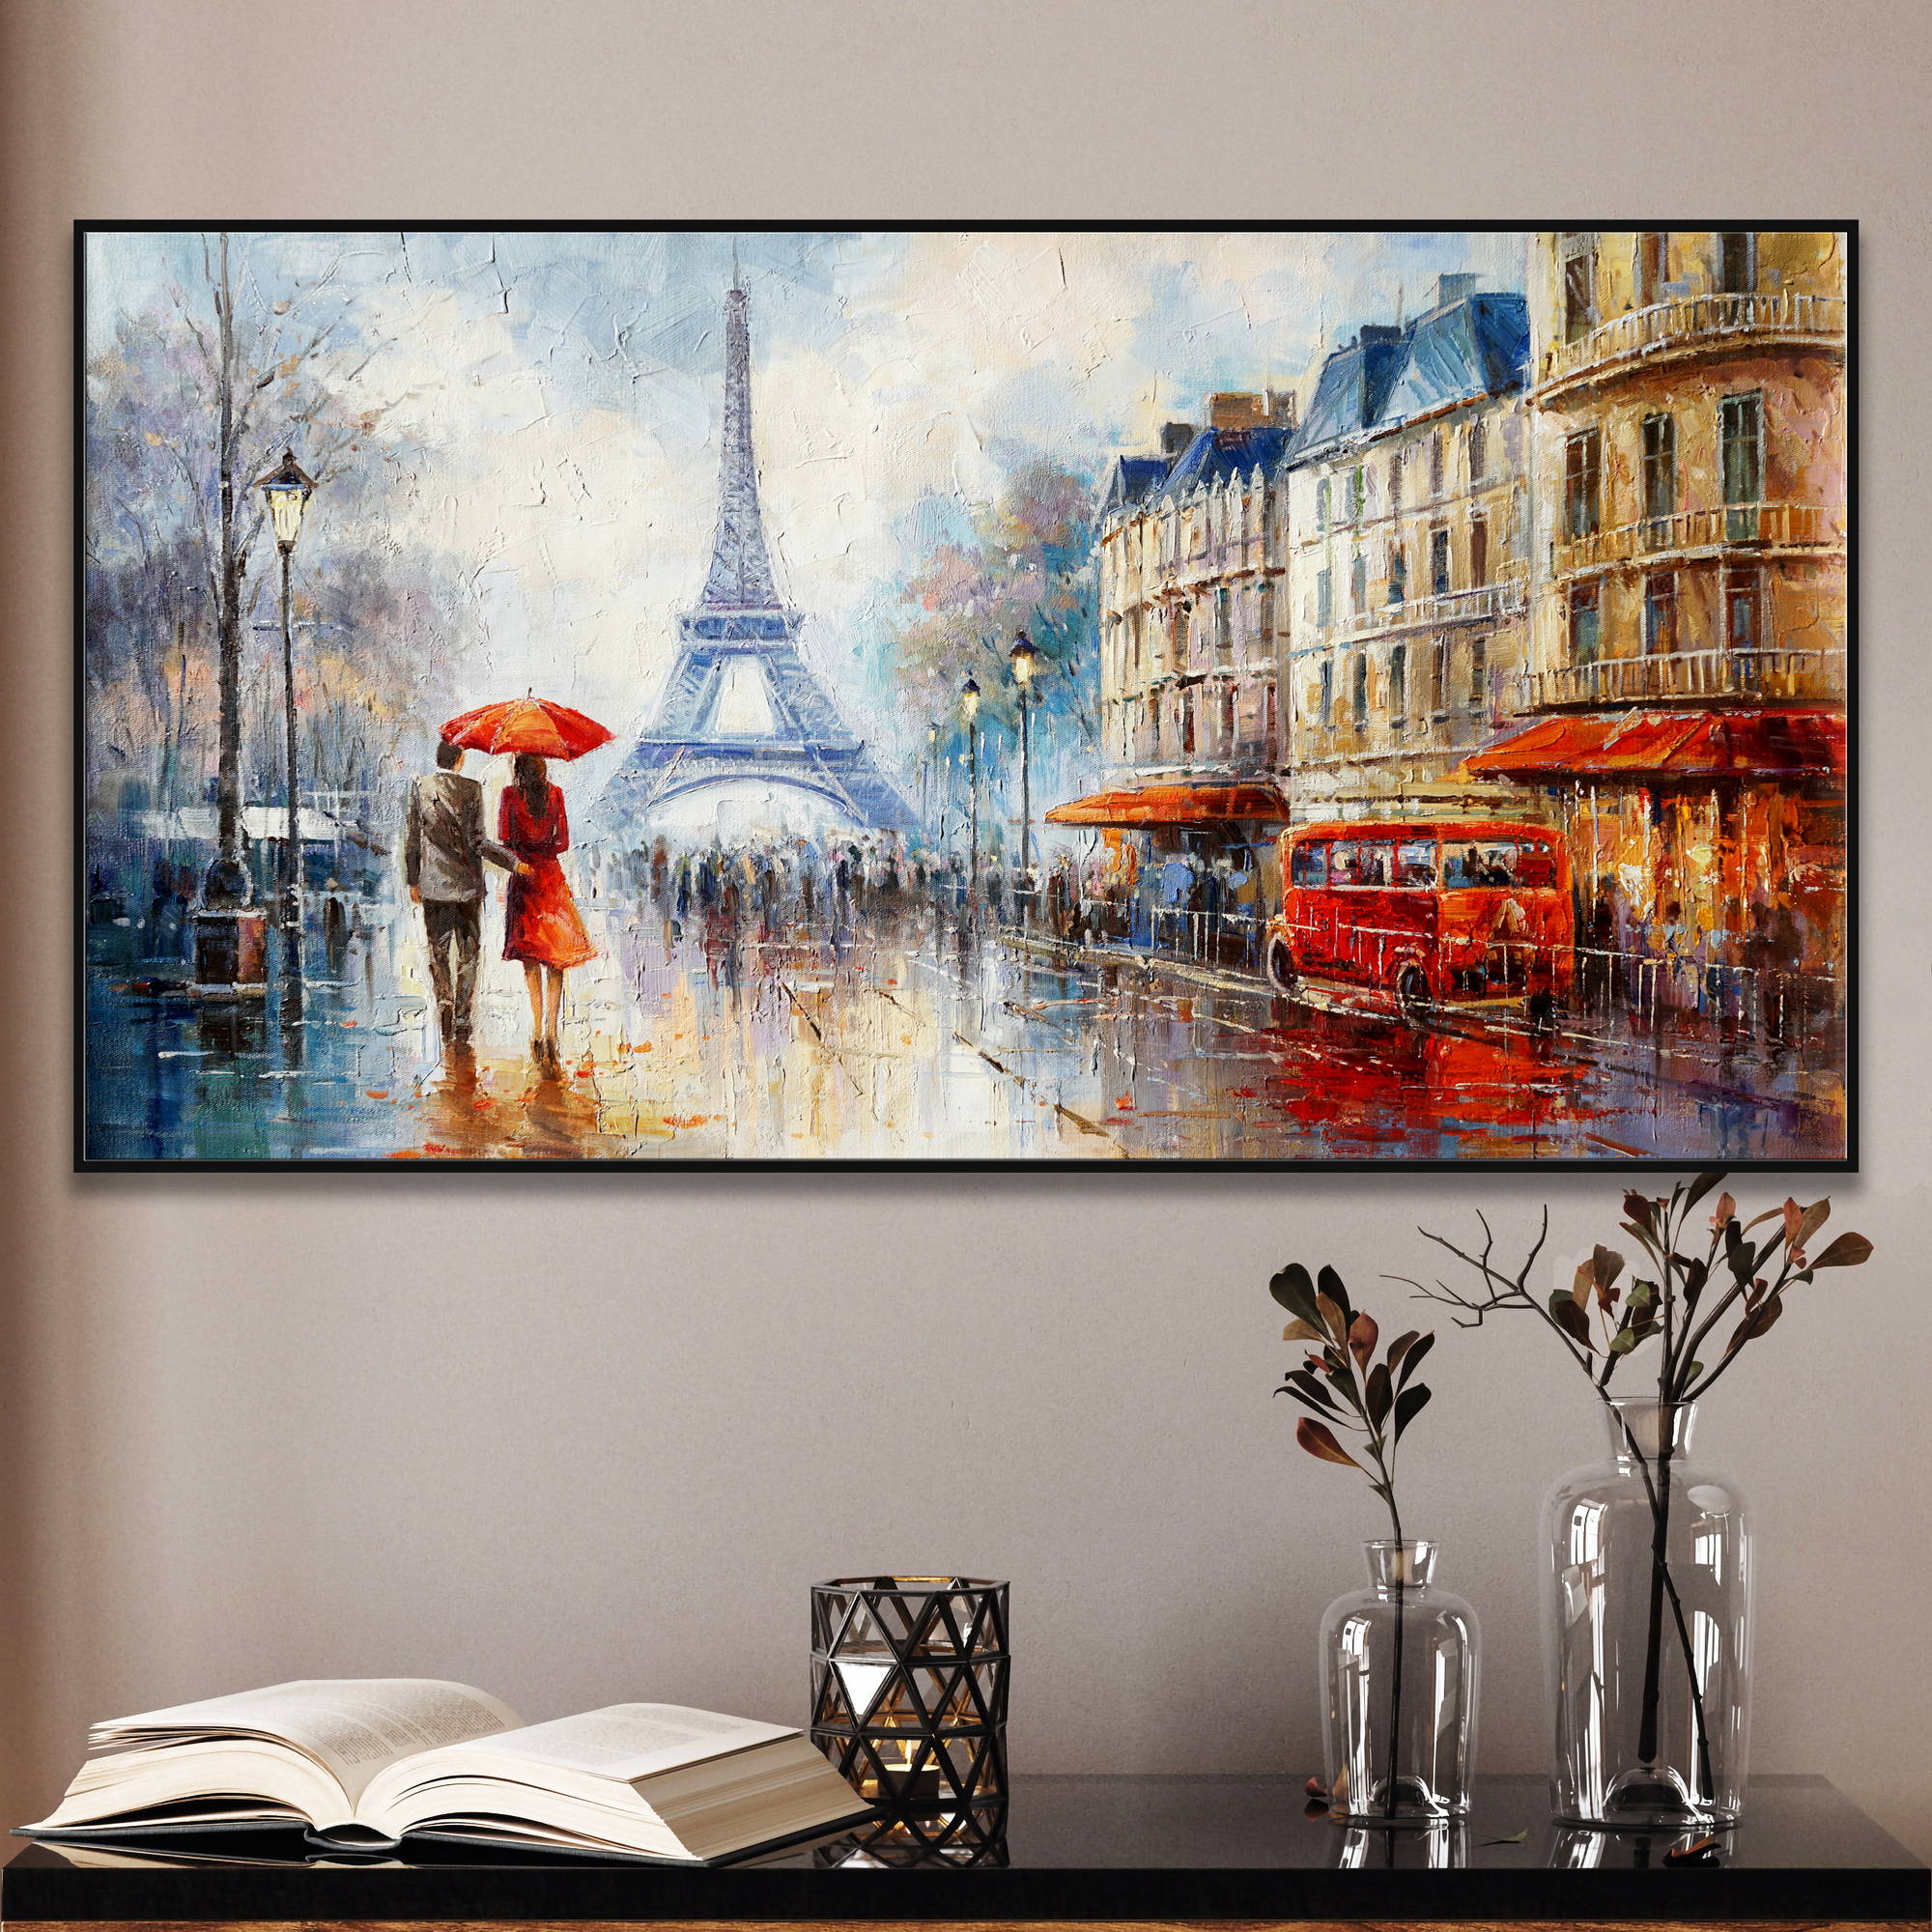 Dipinto di Parigi con coppia a passeggio sotto un ombrello rosso, Torre Eiffel sullo sfondo